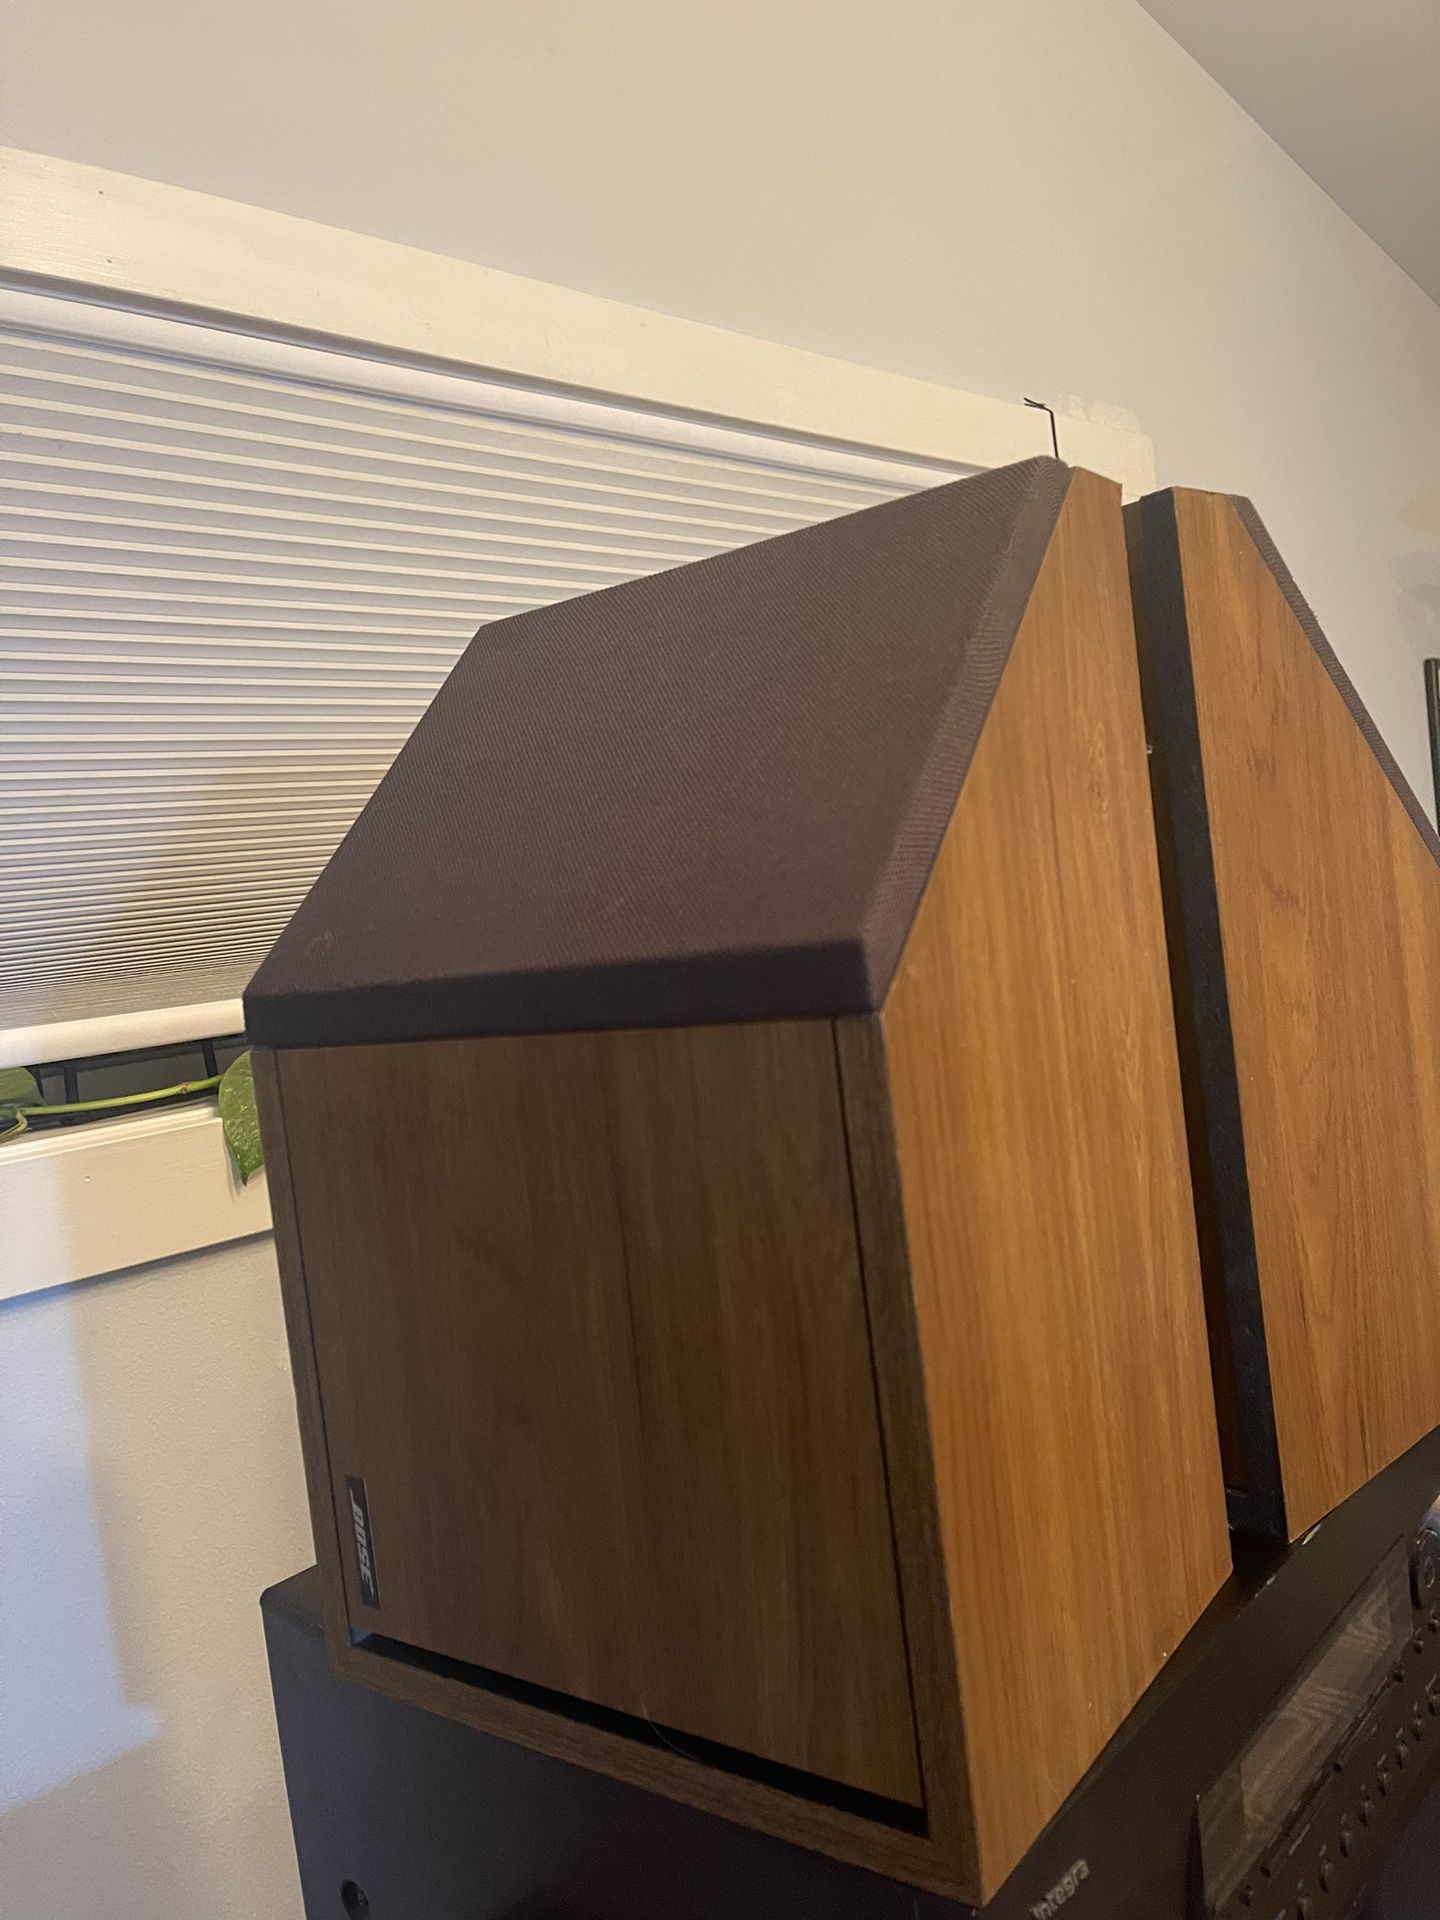 Vintage Bose 2.2 Direct Reflecting Wood Angled Bookshelf Speakers